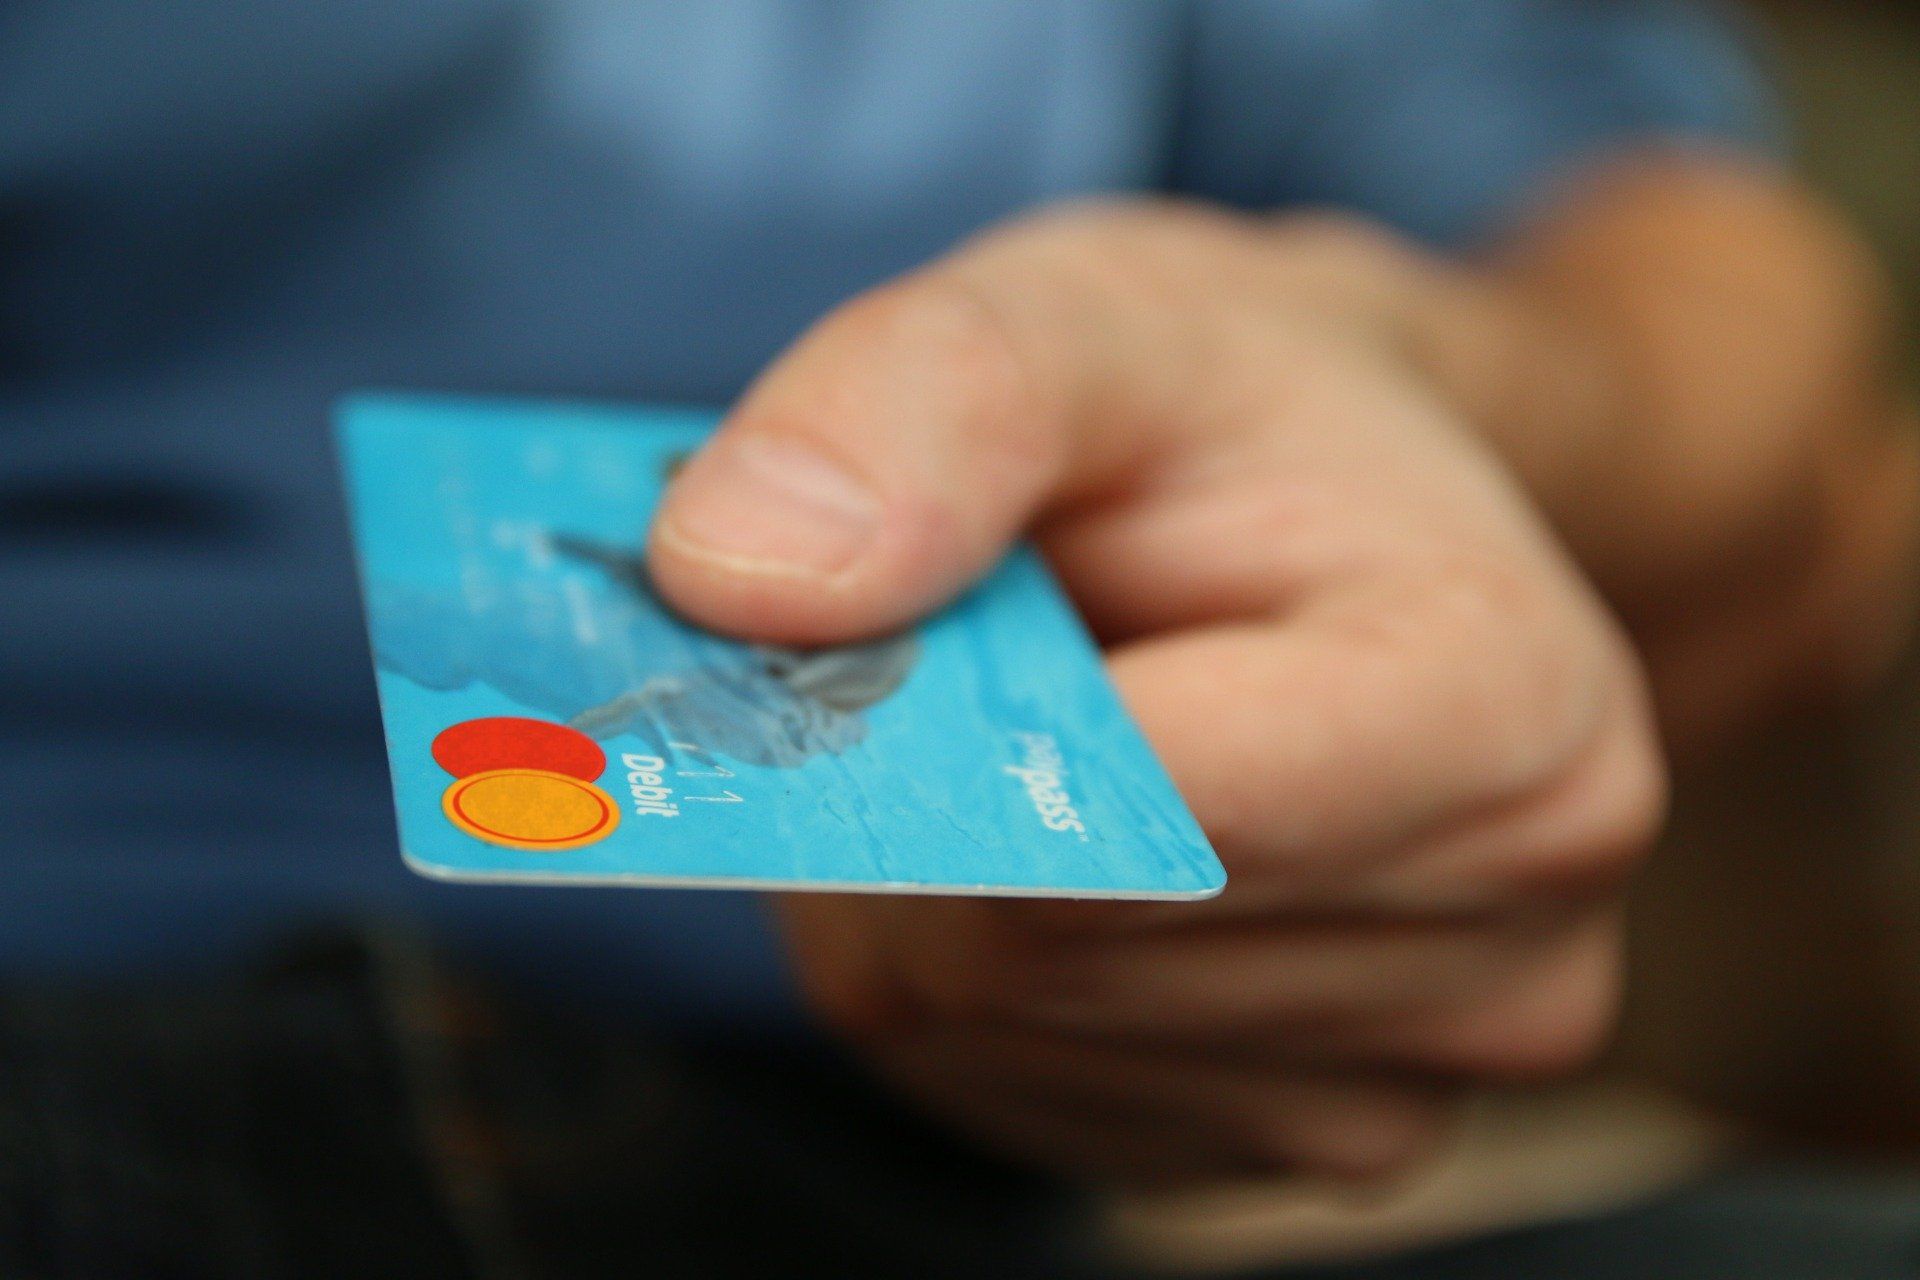 Image of debit card